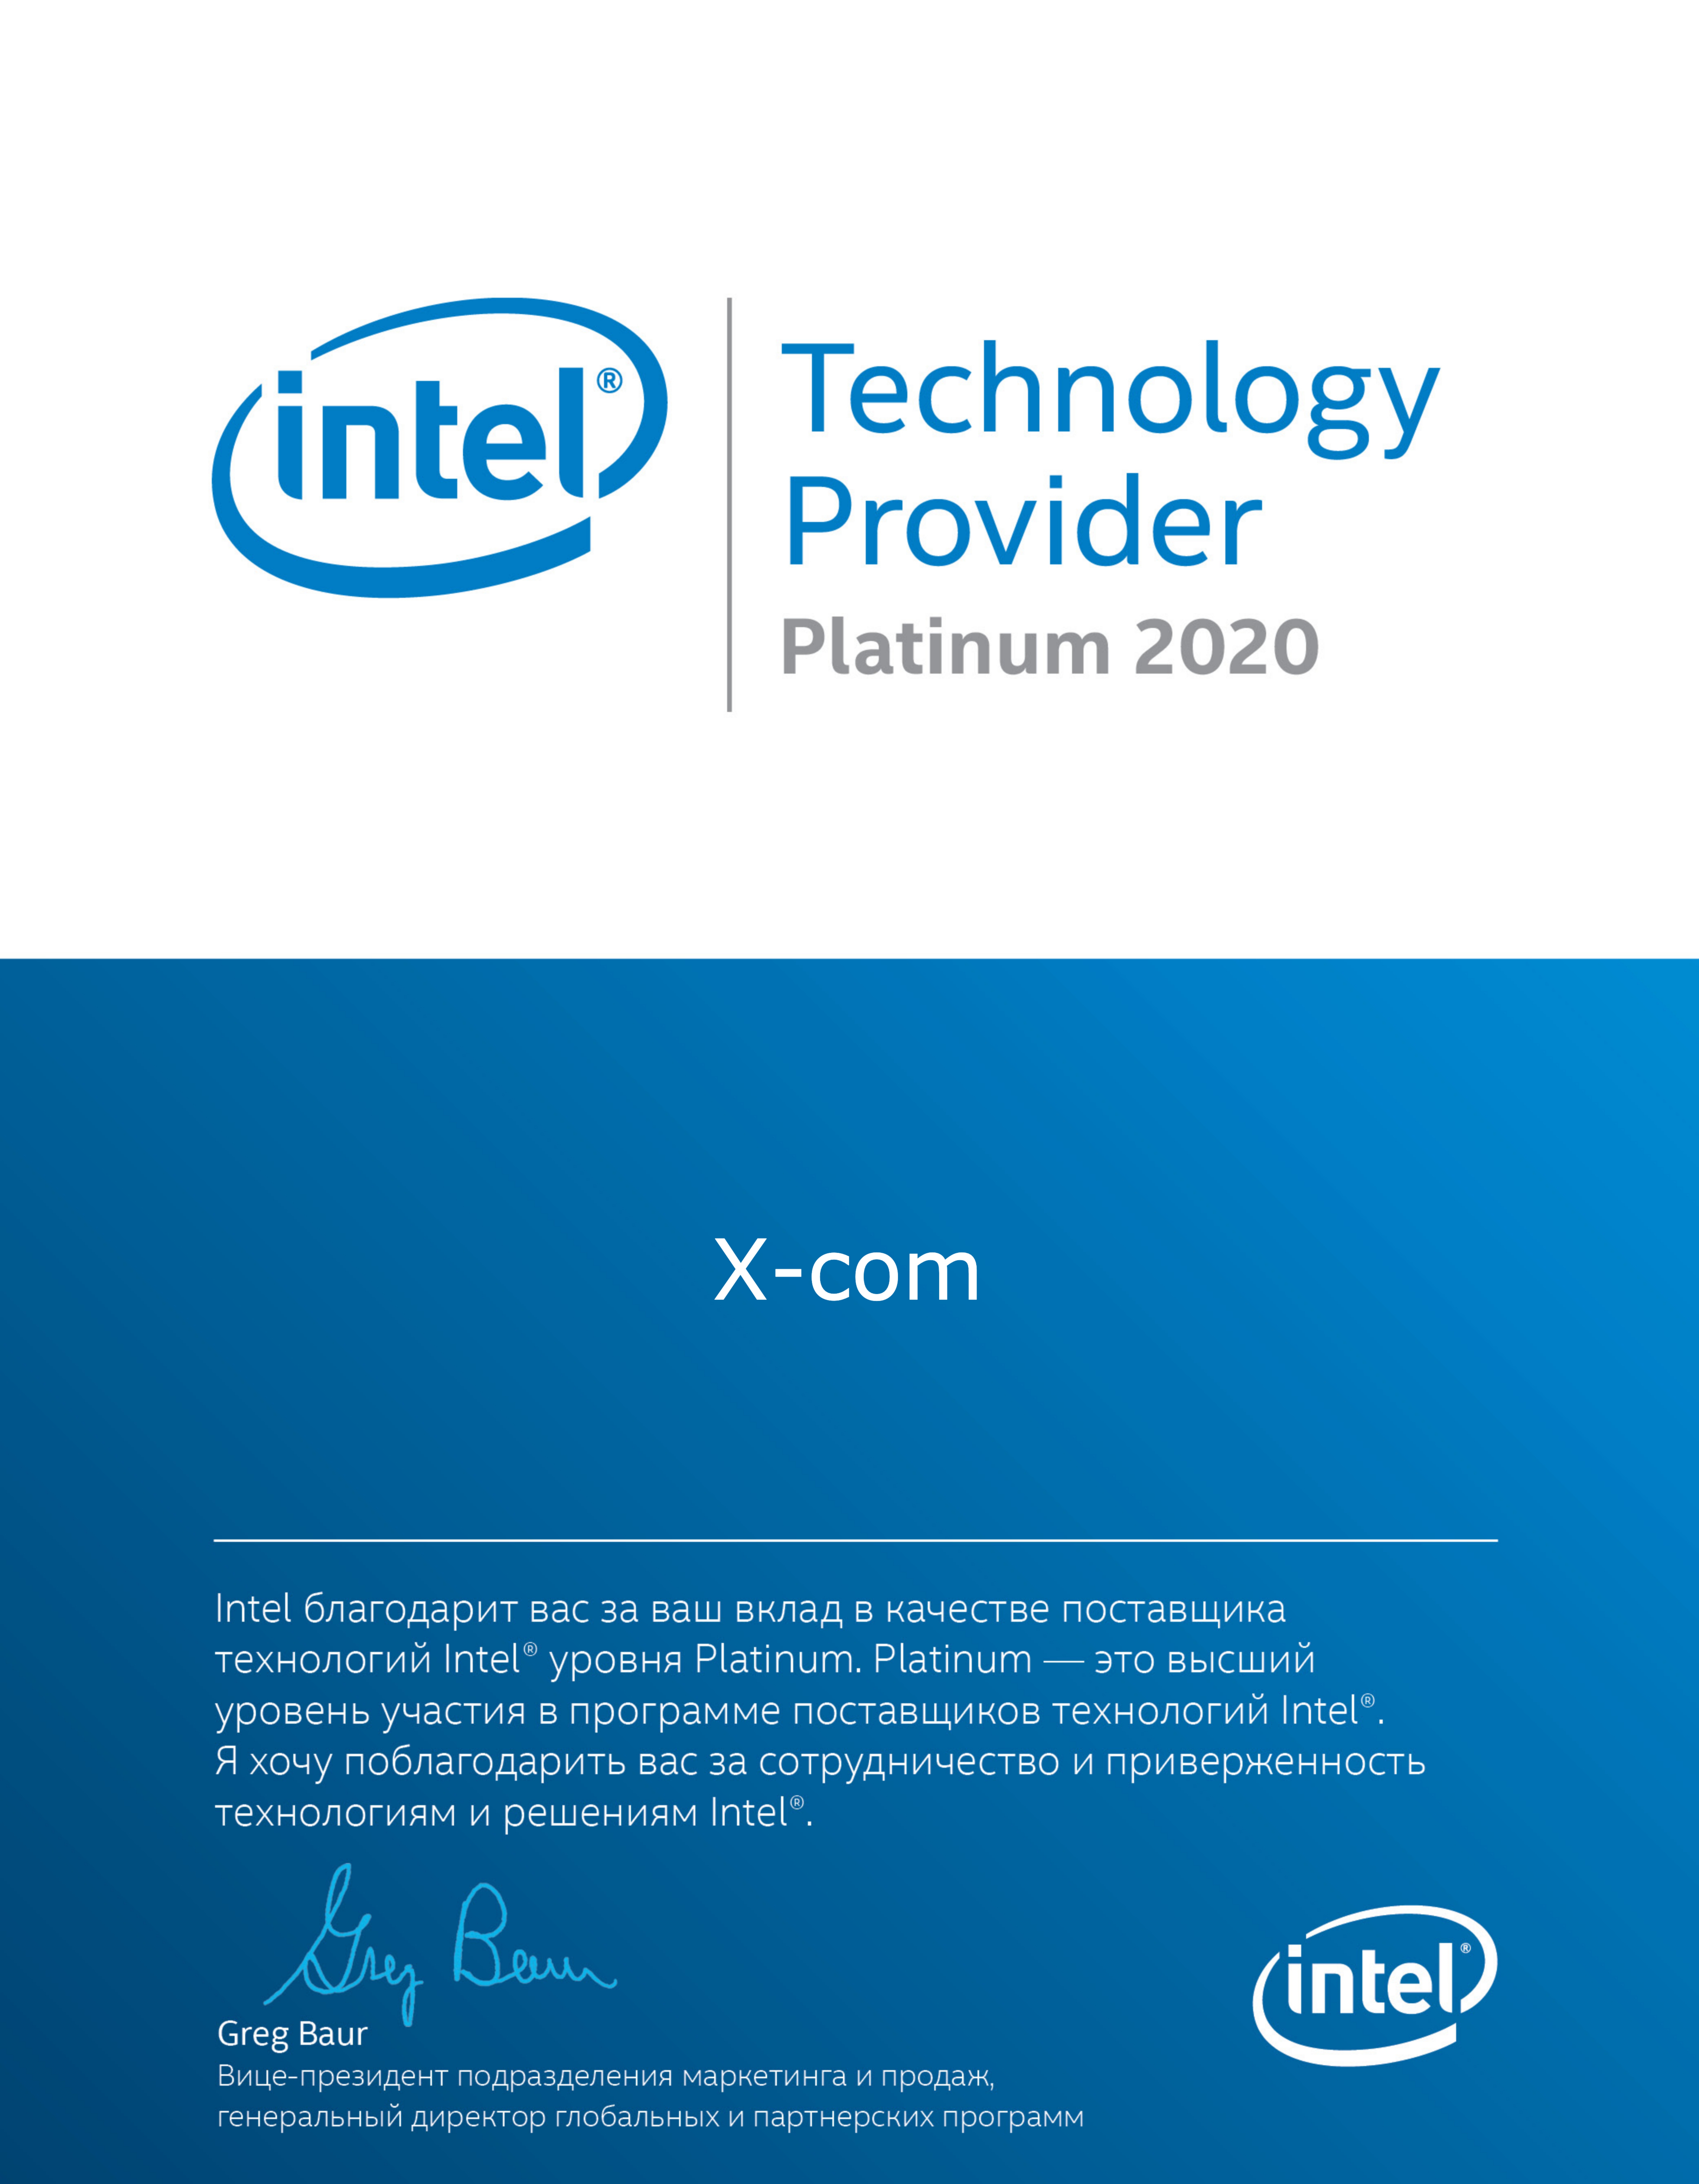 X-Com подтвердила статус Платинового партнера Intel